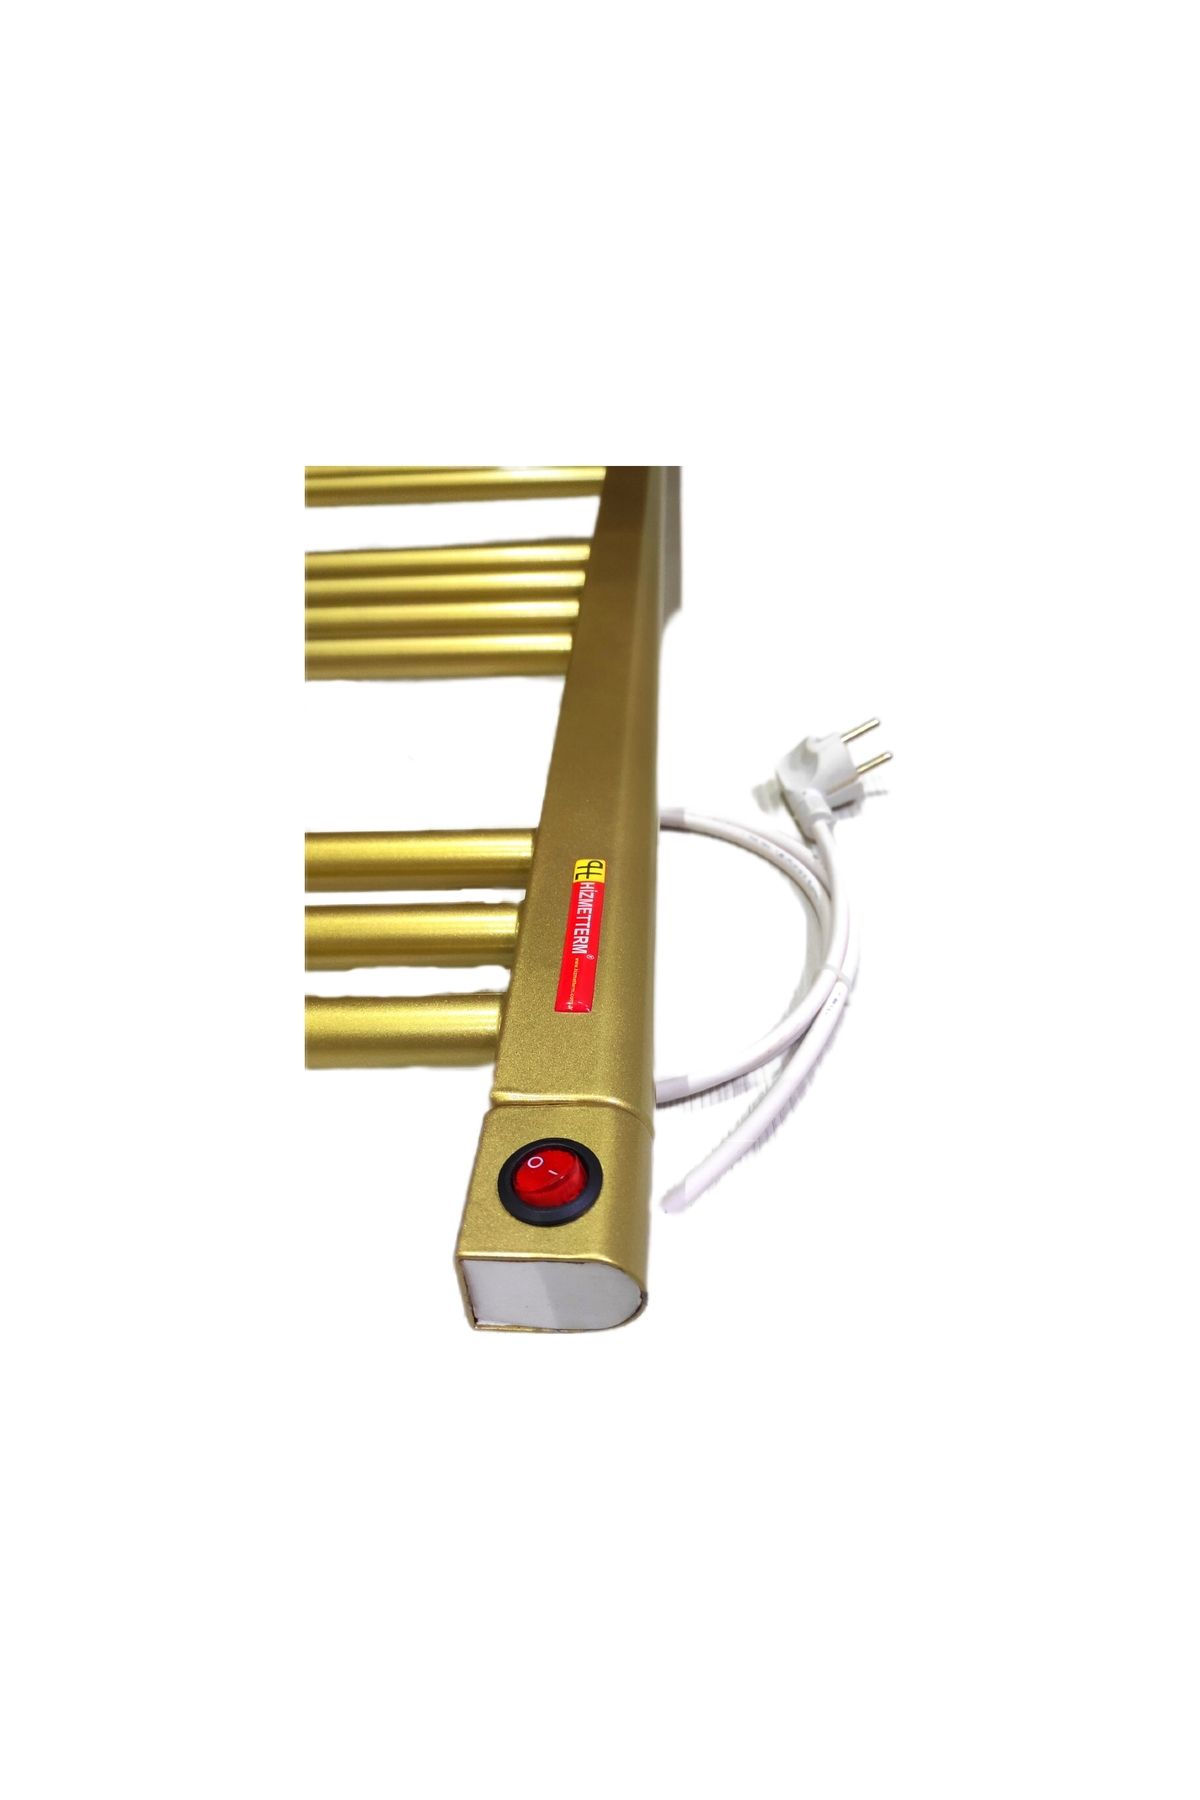 Hizmetterm Elektrikli Gold (Sarı) Havlupan 50x100 cm Hizmetterm